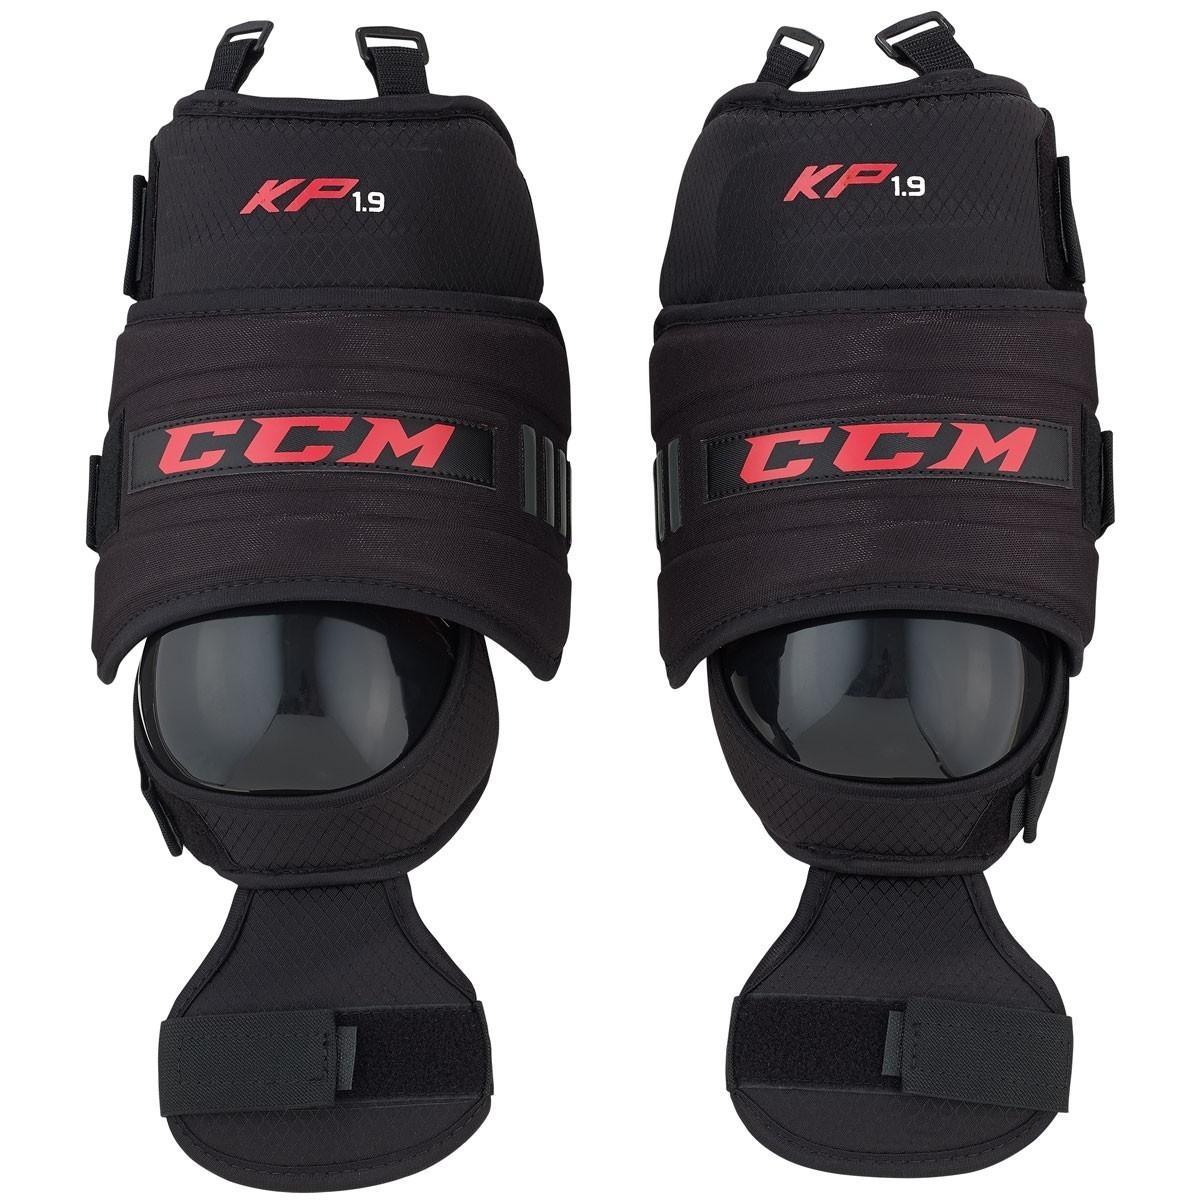 CCM 1.9 Sr. Goalie Knee Guardsproduct zoom image #2